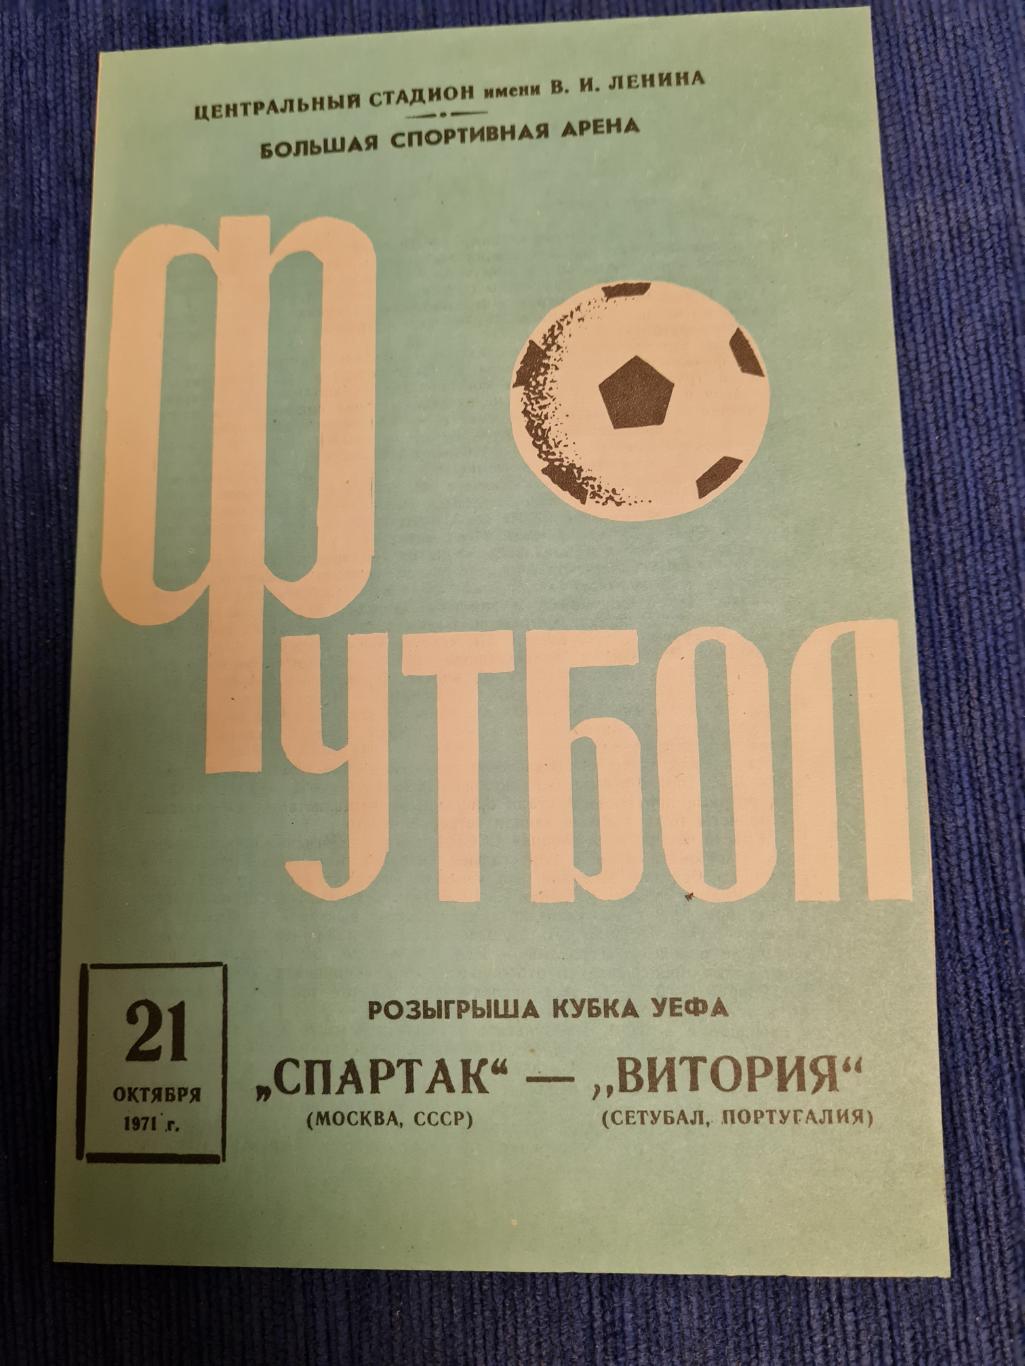 21.10.1971 Спартак - Витория Сетубал